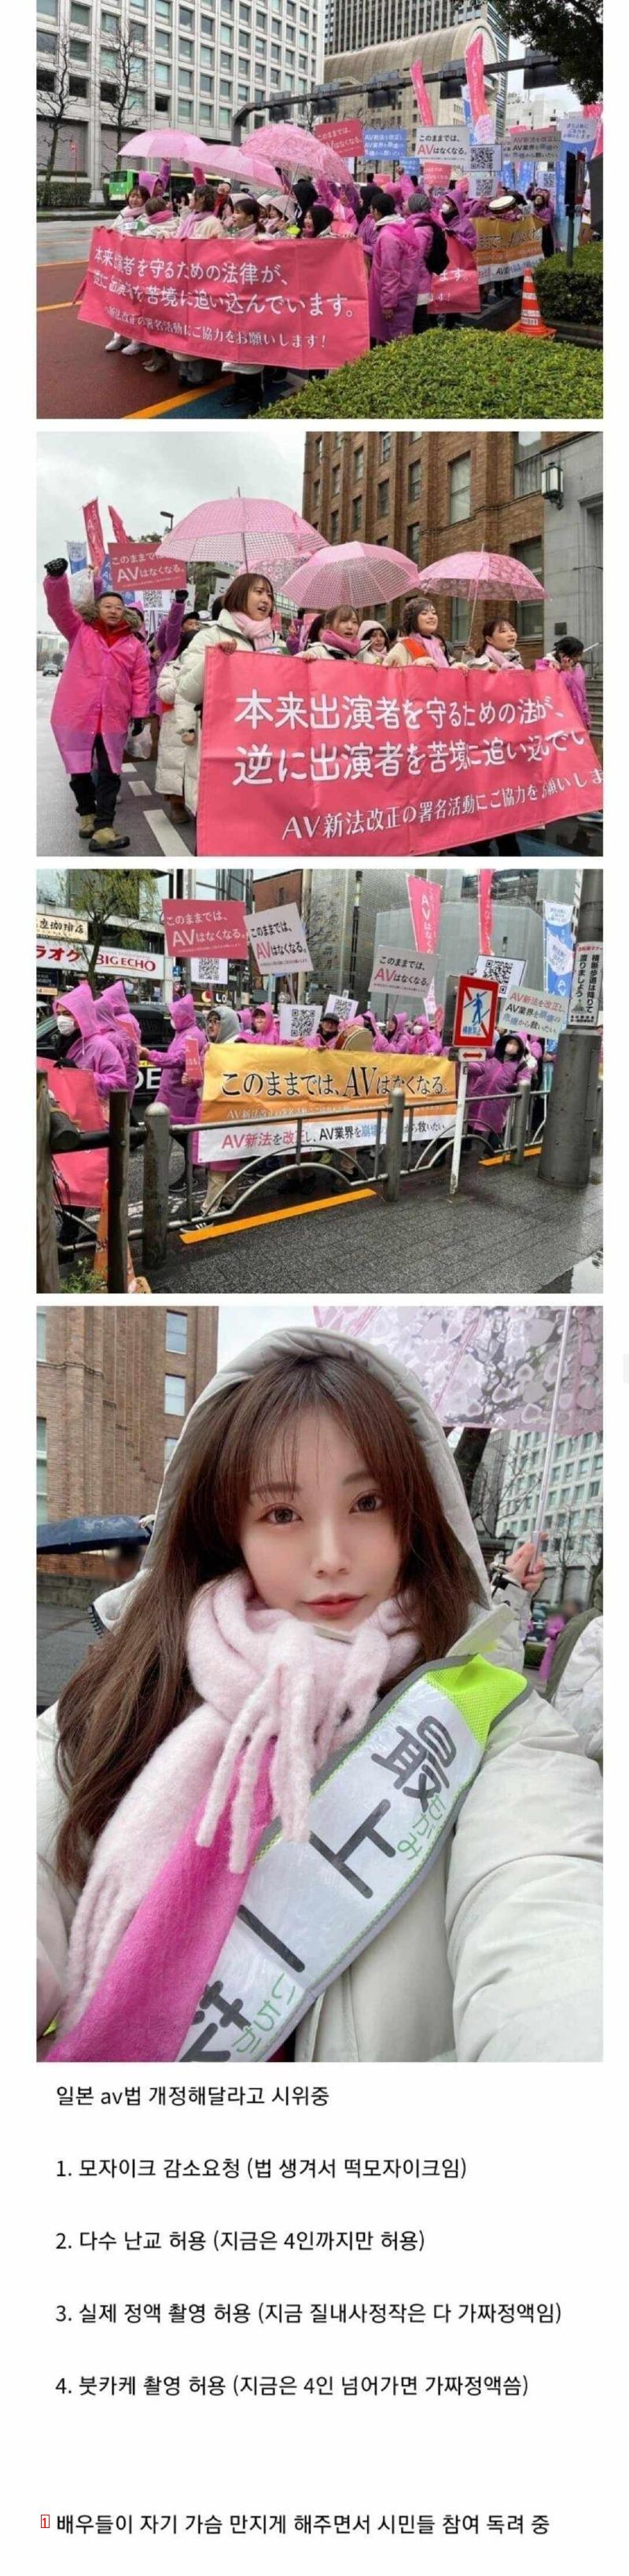 韓国のAV俳優たちのデモ現場が騒いでいる